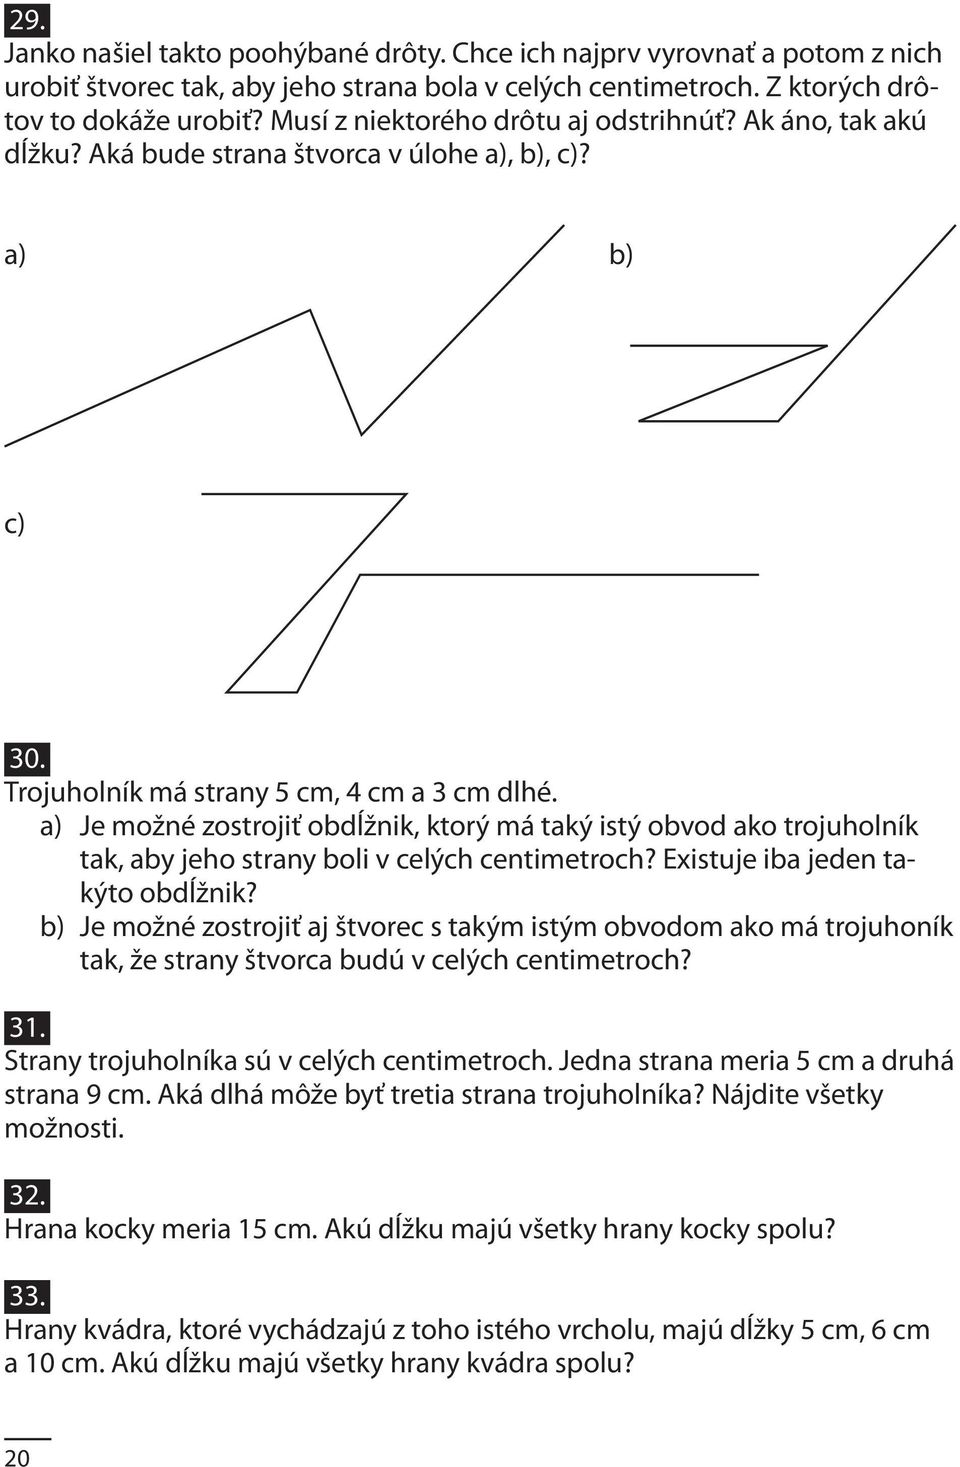 a) Je možné zostrojiť obdĺžnik, ktorý má taký istý obvod ako trojuholník tak, aby jeho strany boli v celých centimetroch? Existuje iba jeden takýto obdĺžnik?